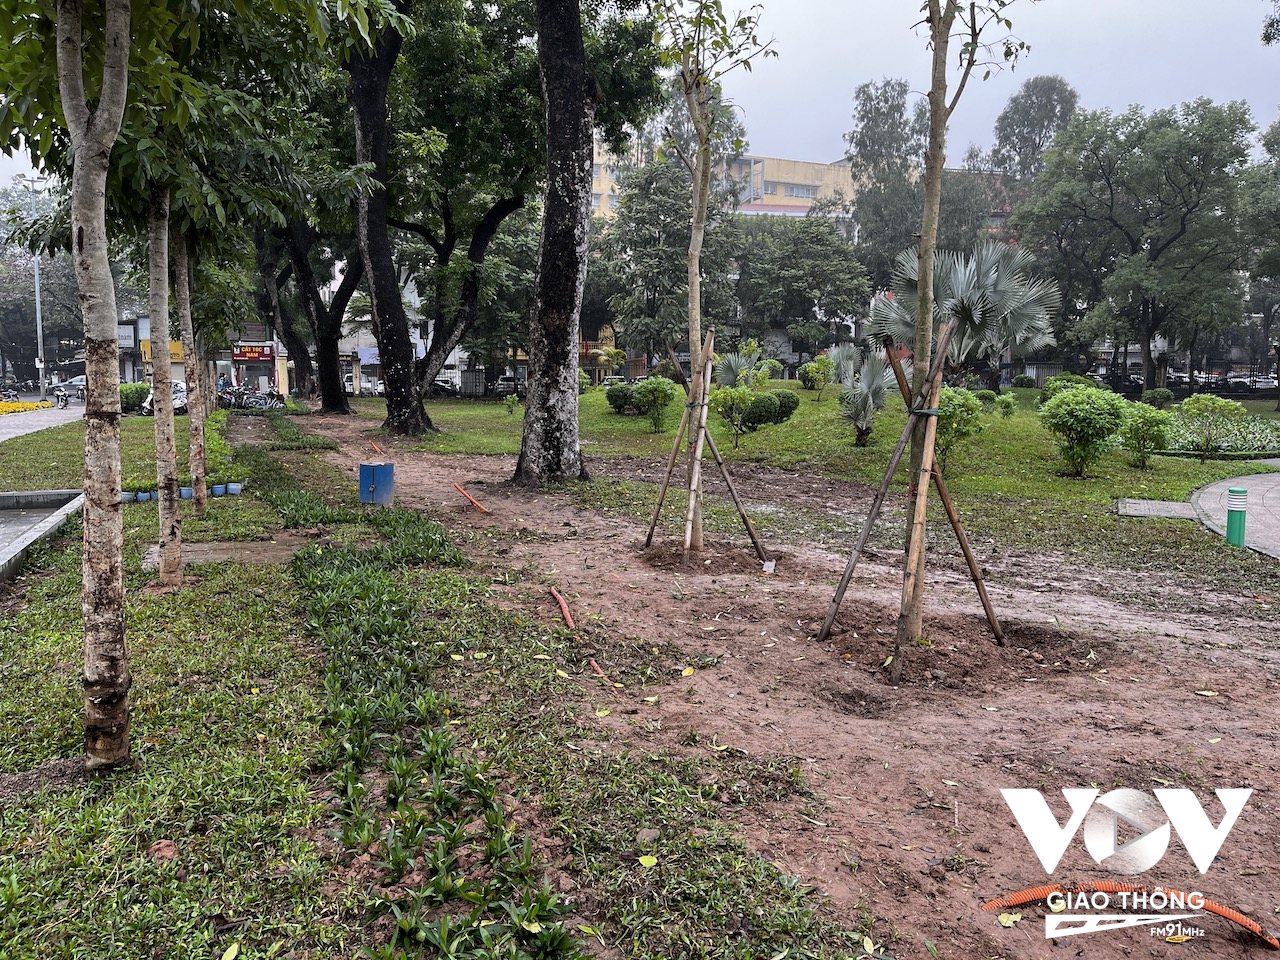 Tuy nhiên, đến nay, mới chỉ có một phần hàng rào mặt đường Trần Nhân Tông được dỡ bỏ và trồng thêm một số cây mới...